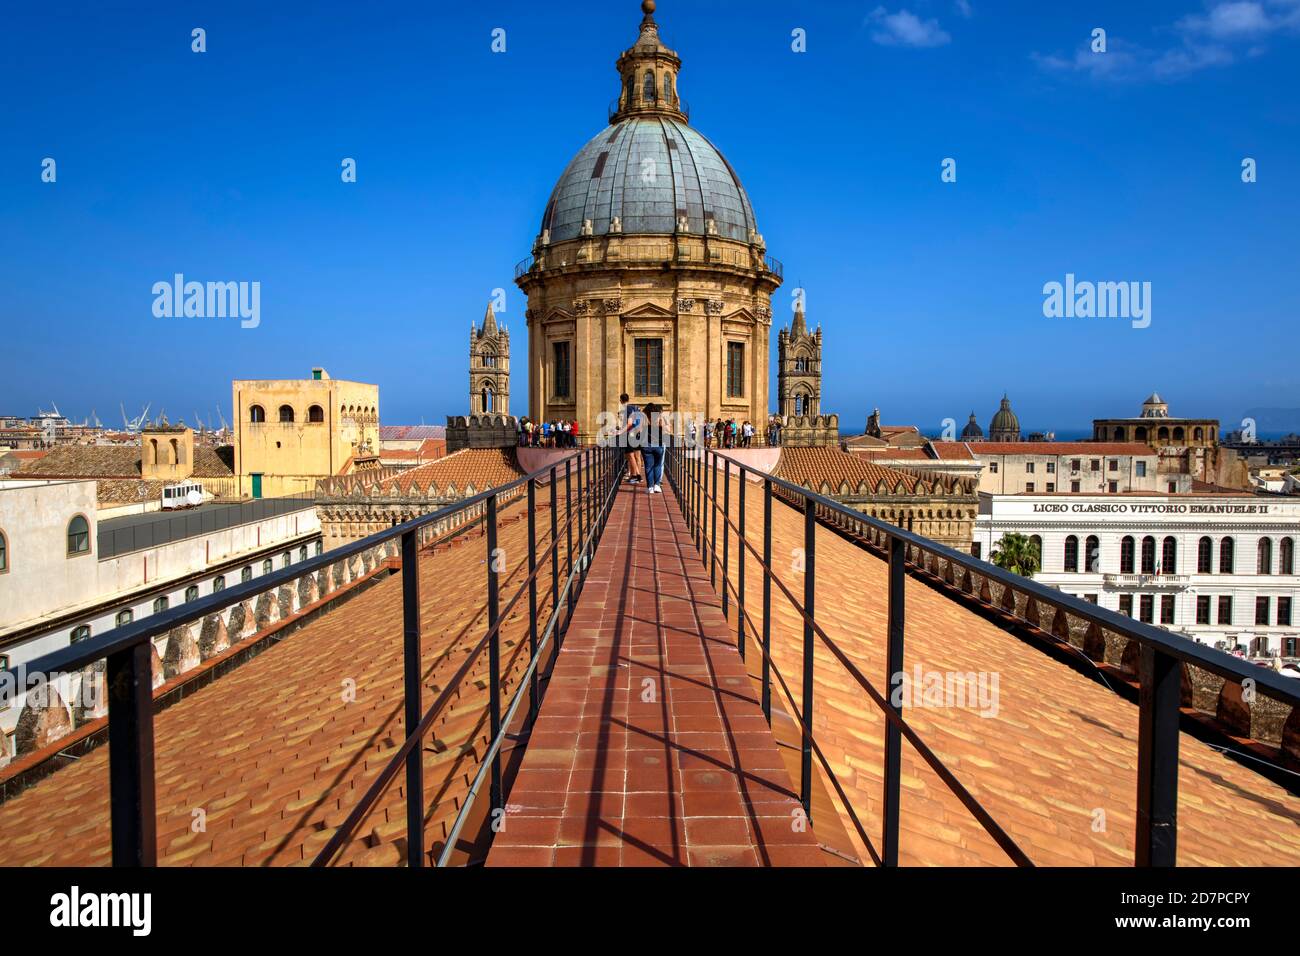 Dach der Kathedrale von Palermo. Palermo, Sizilien, Italien Stockfoto